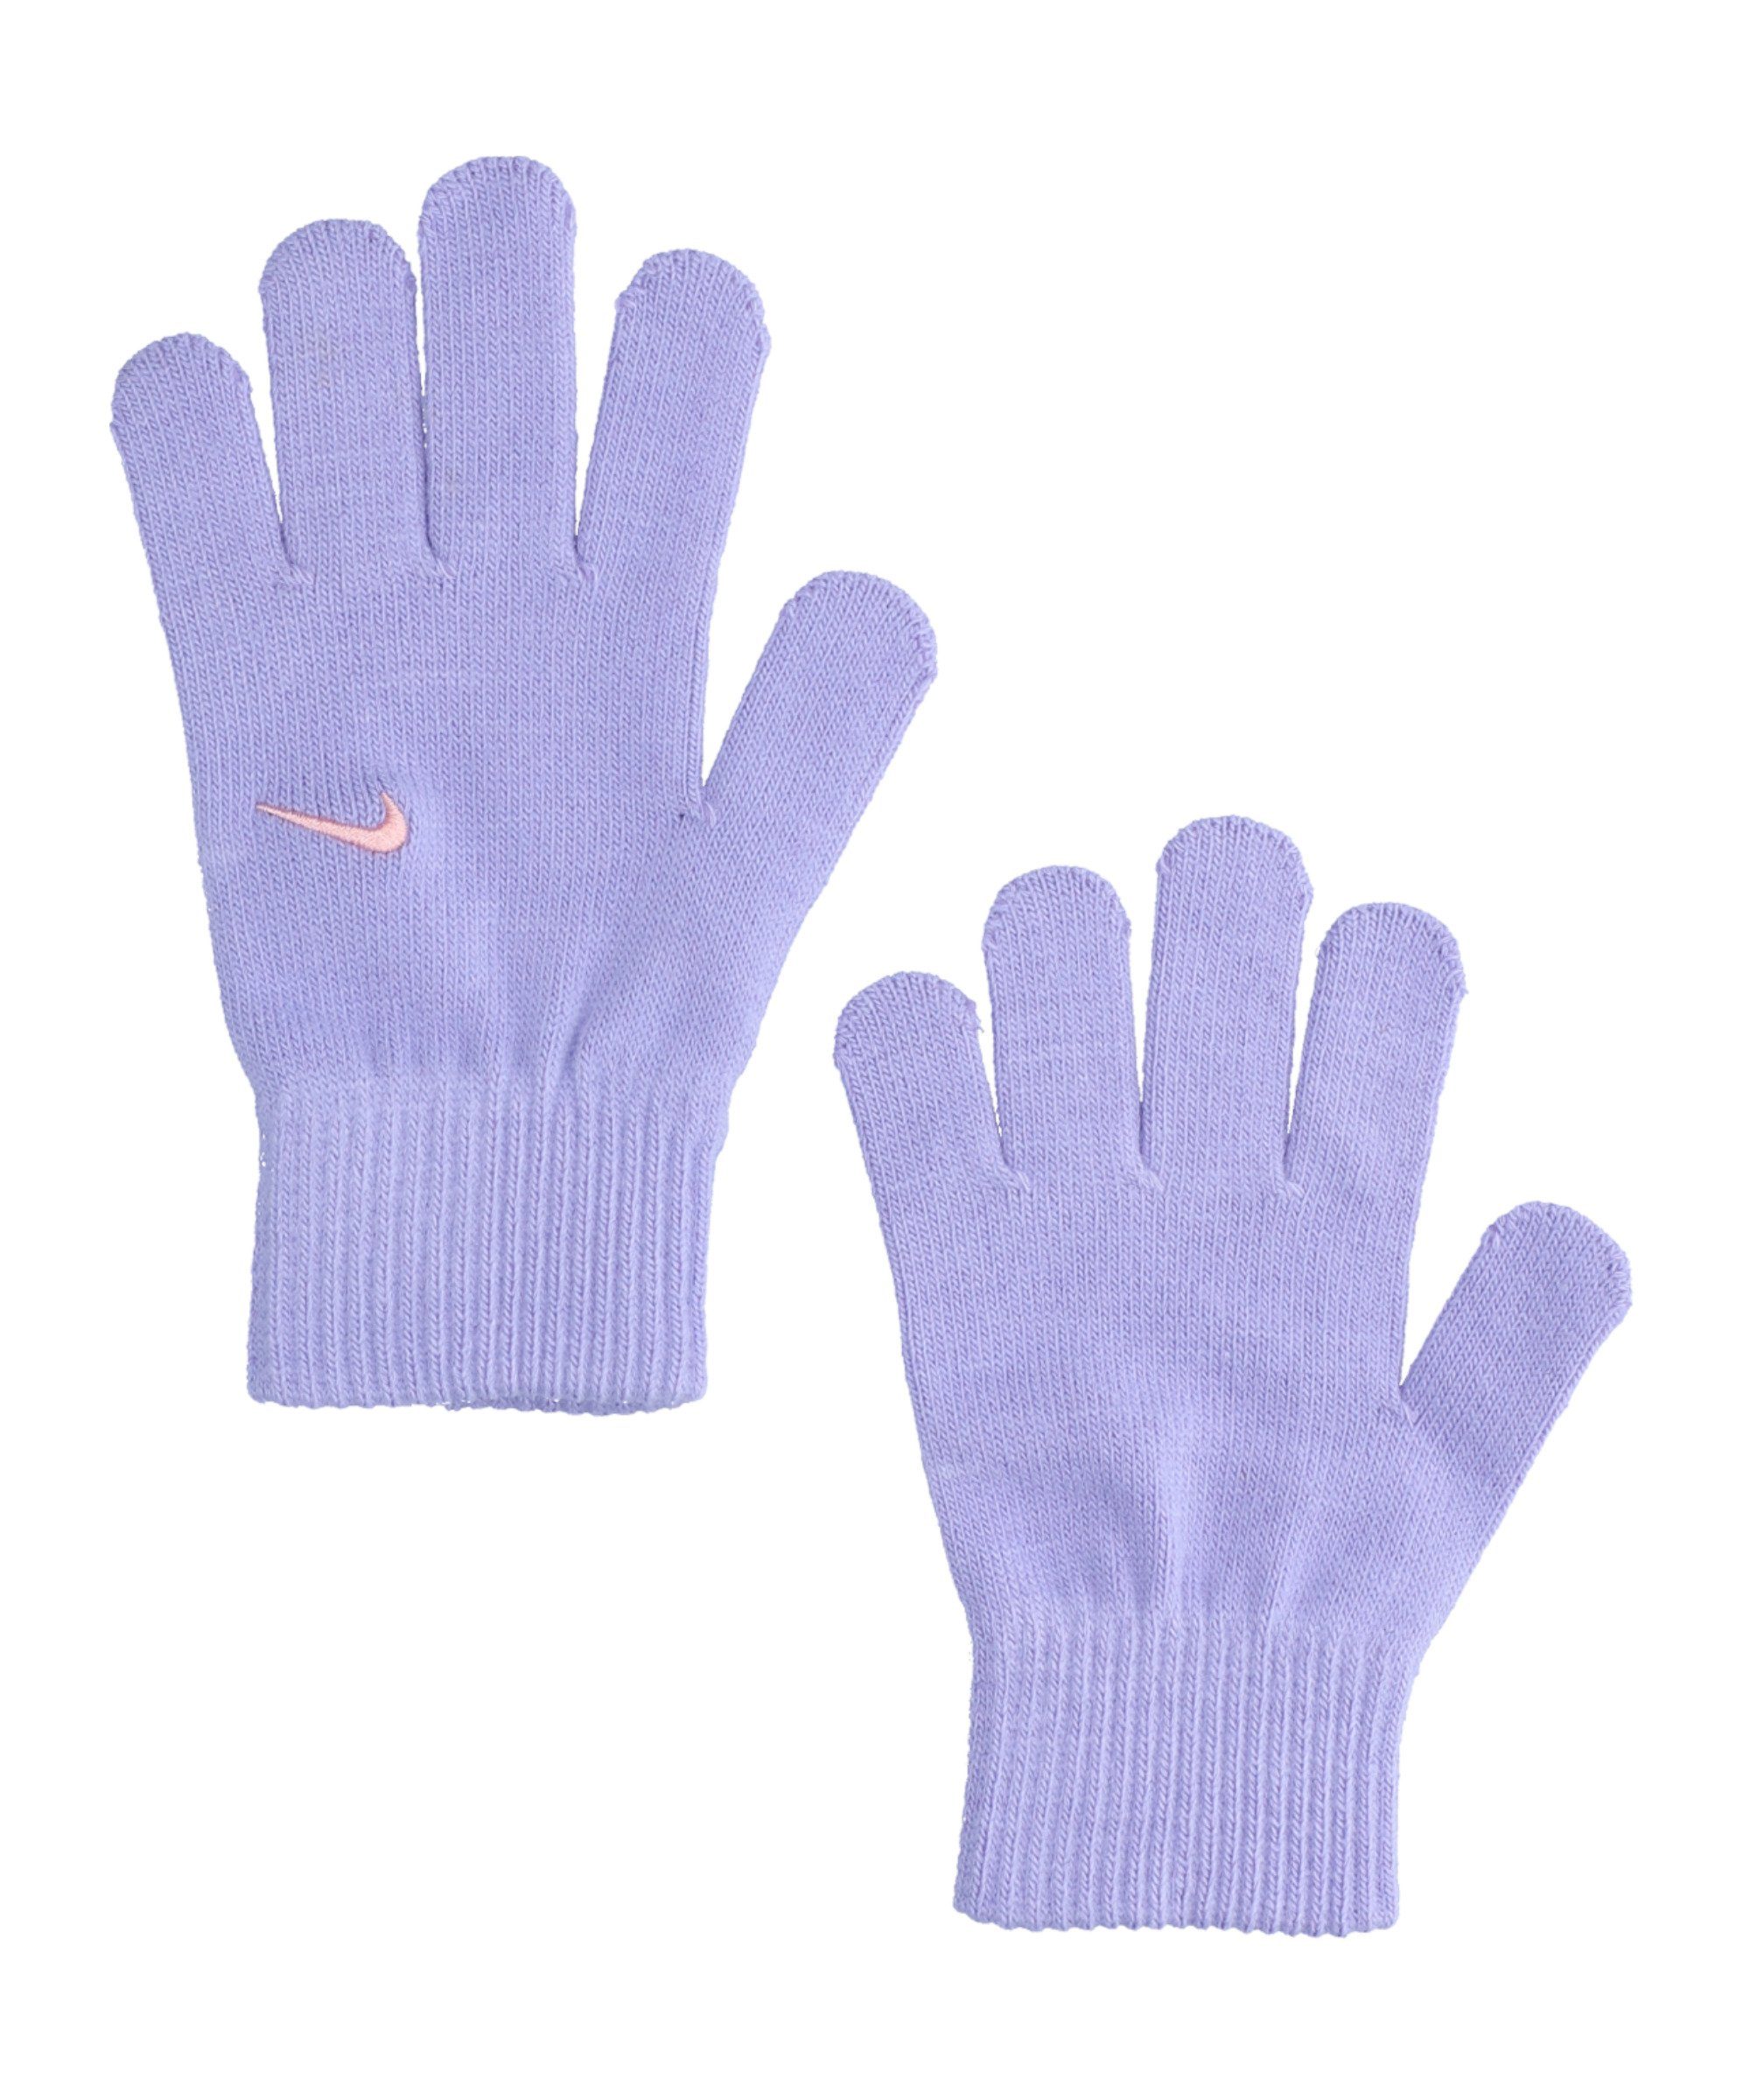 Knit Nike Swoosh Feldspielerhandschuhe 2.0 Handschuhe Kids lila